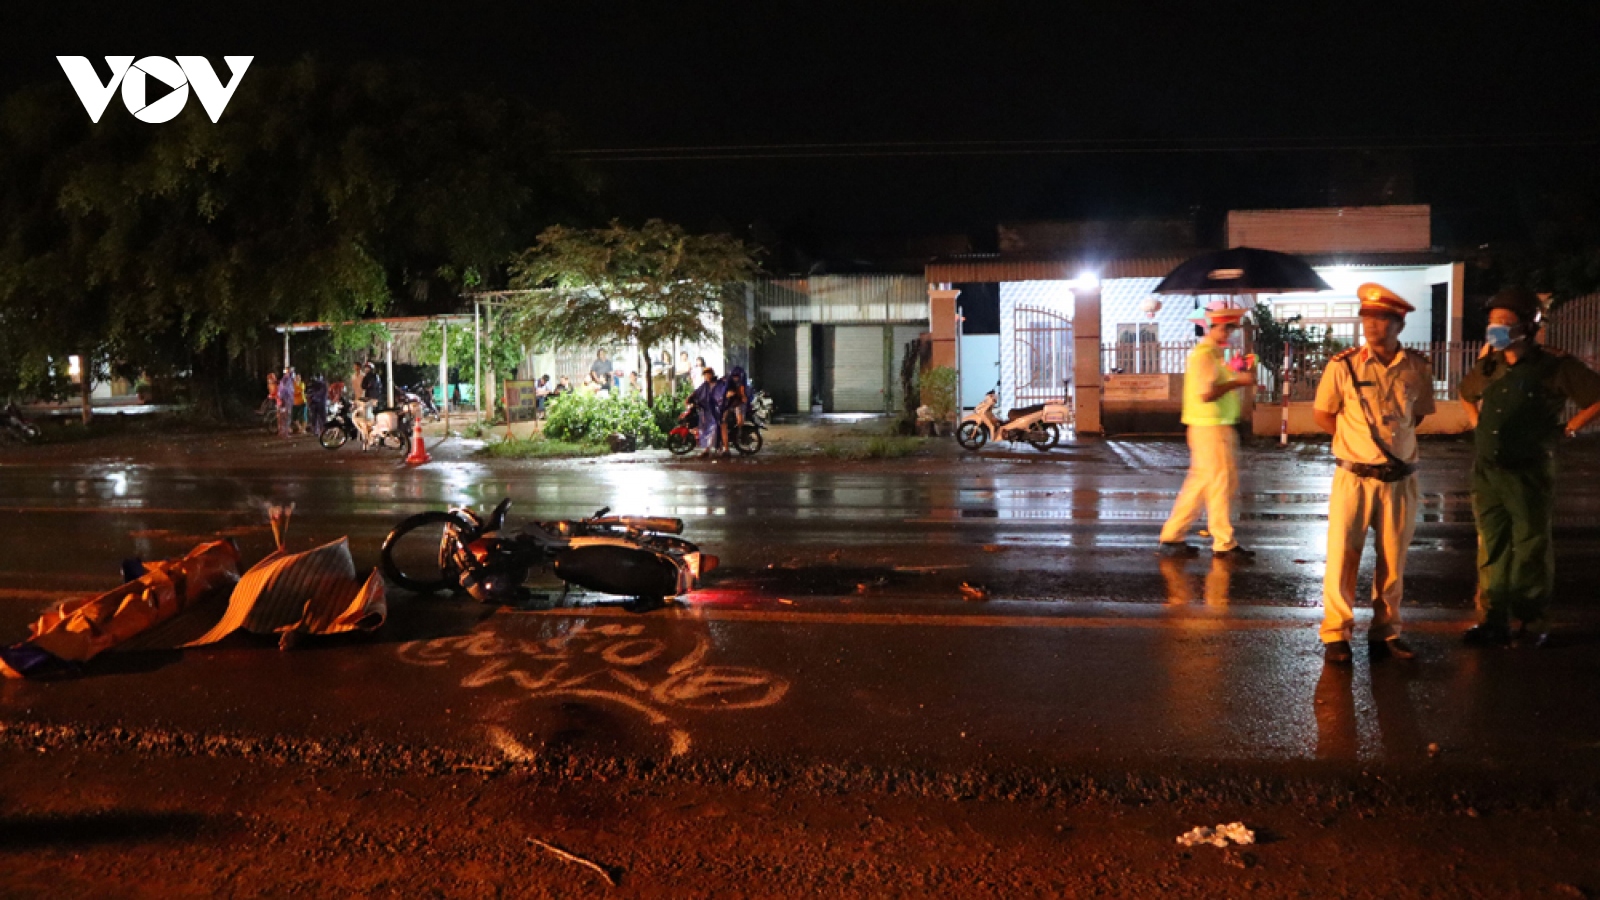 Xe tải lấn làn tông trực diện xe máy ở Bình Phước, 2 người tử vong